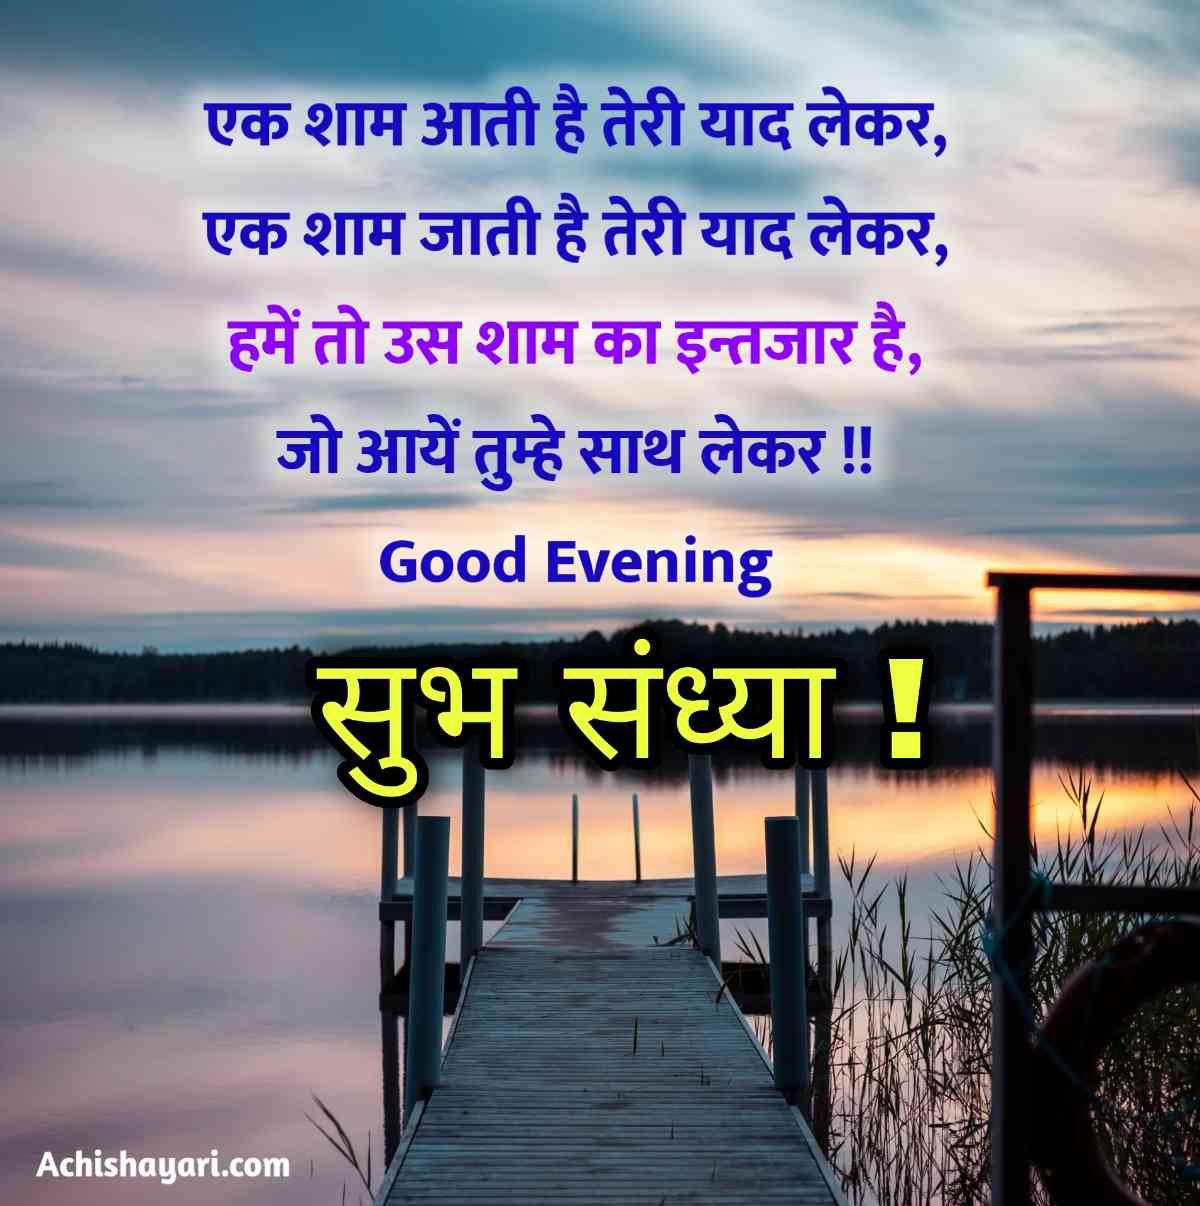 Hindi Good Evening Shayari image